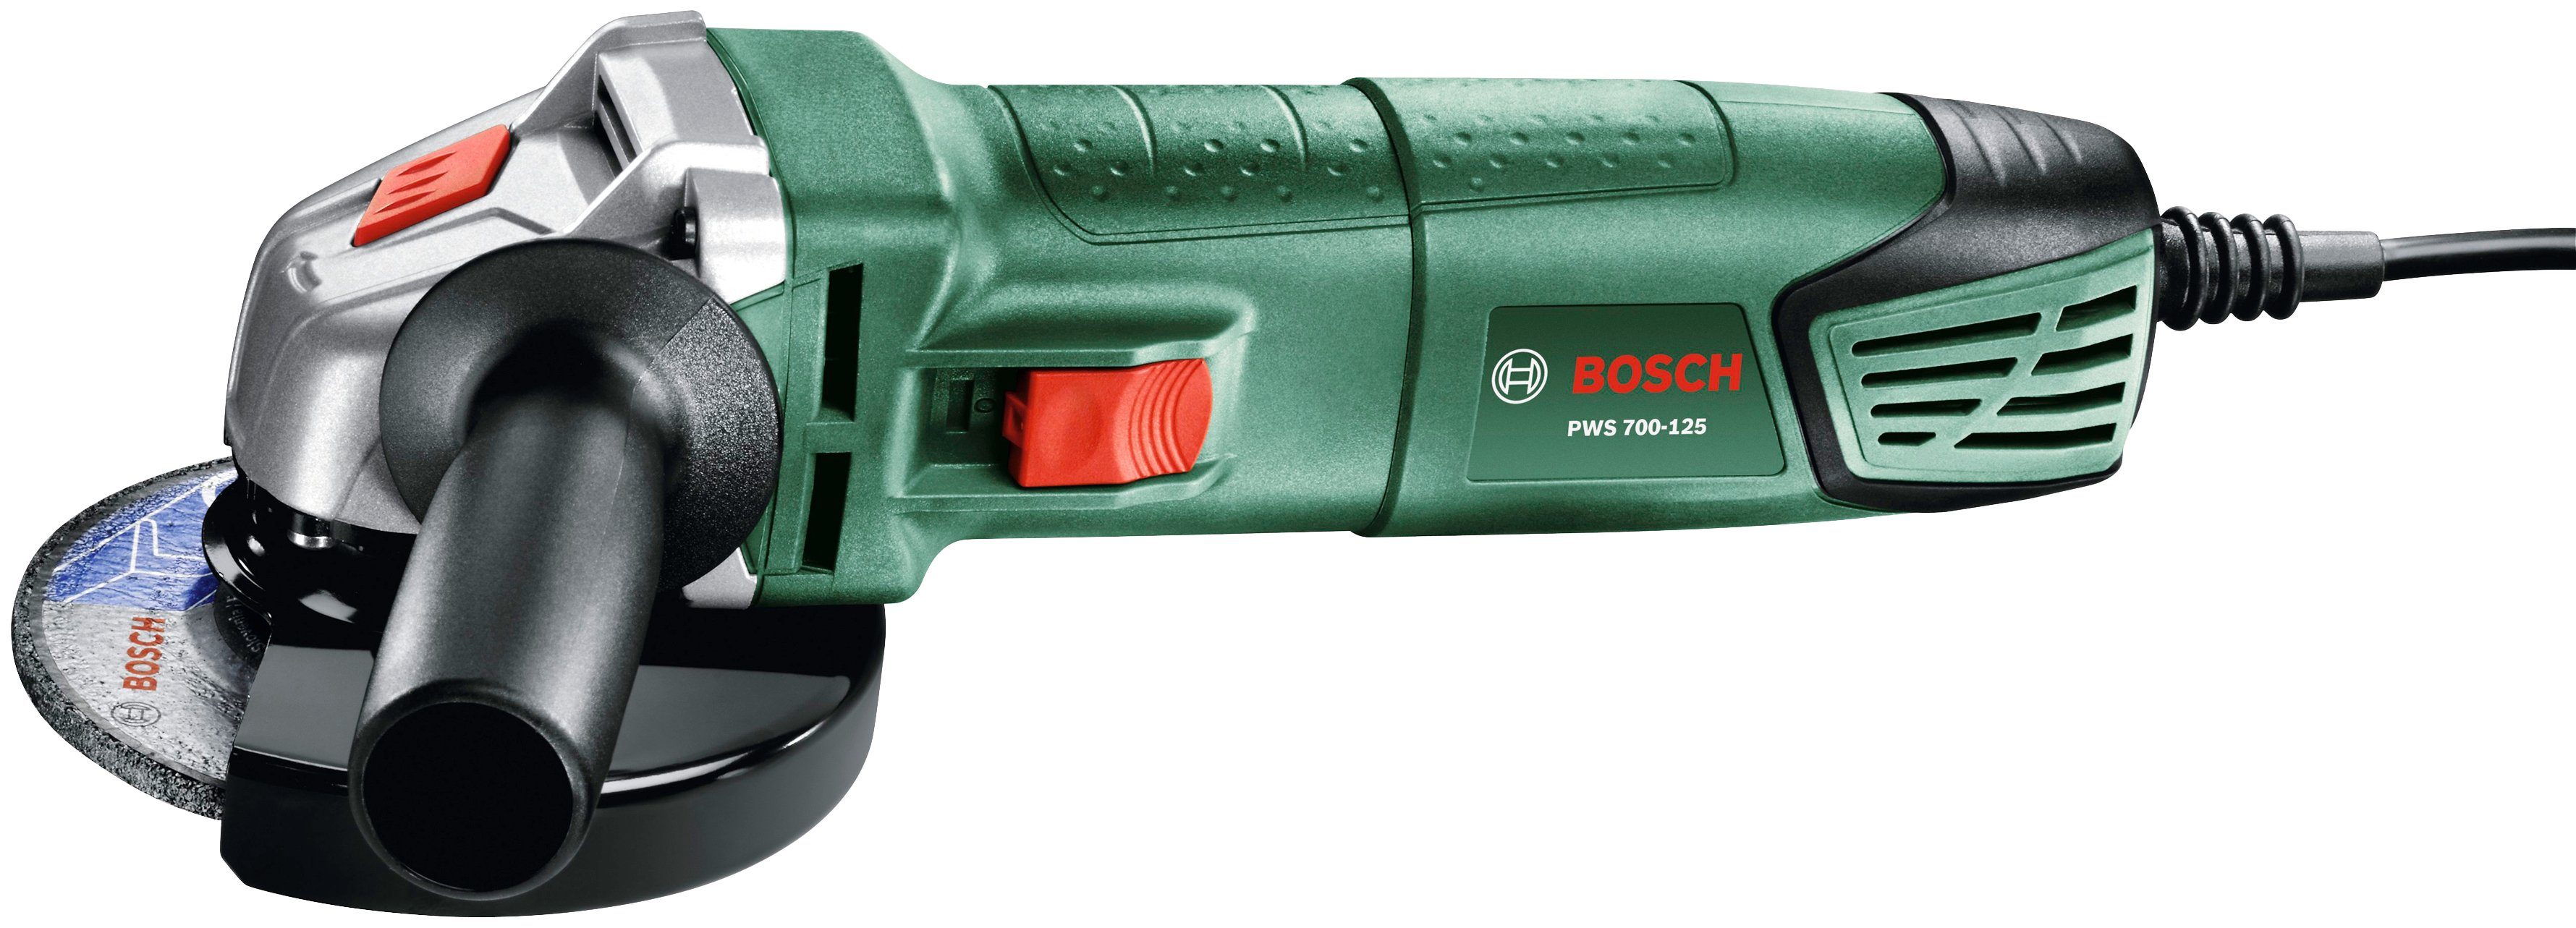 System U/min Home PWS Bosch 12000 Box, 850-125 max. & + Garden Winkelschleifer